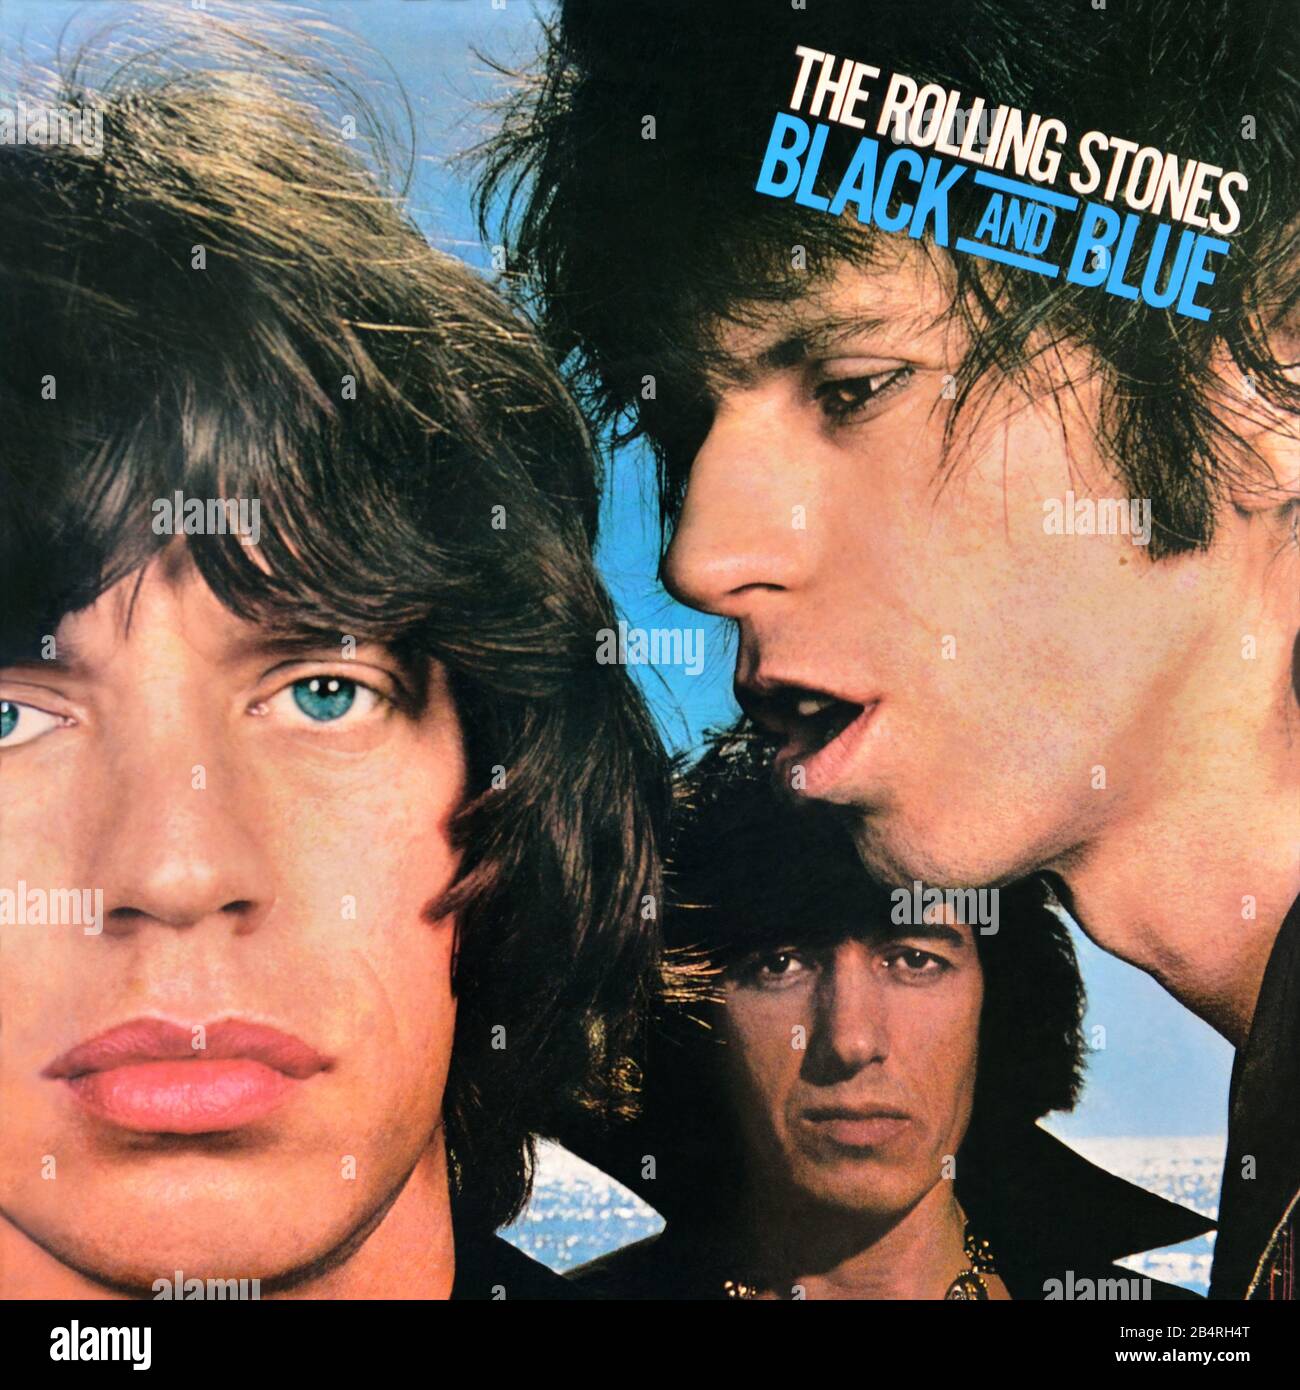 The Rolling Stones - original vinyl album cover - Black And Blue - 1976 Stock Photo